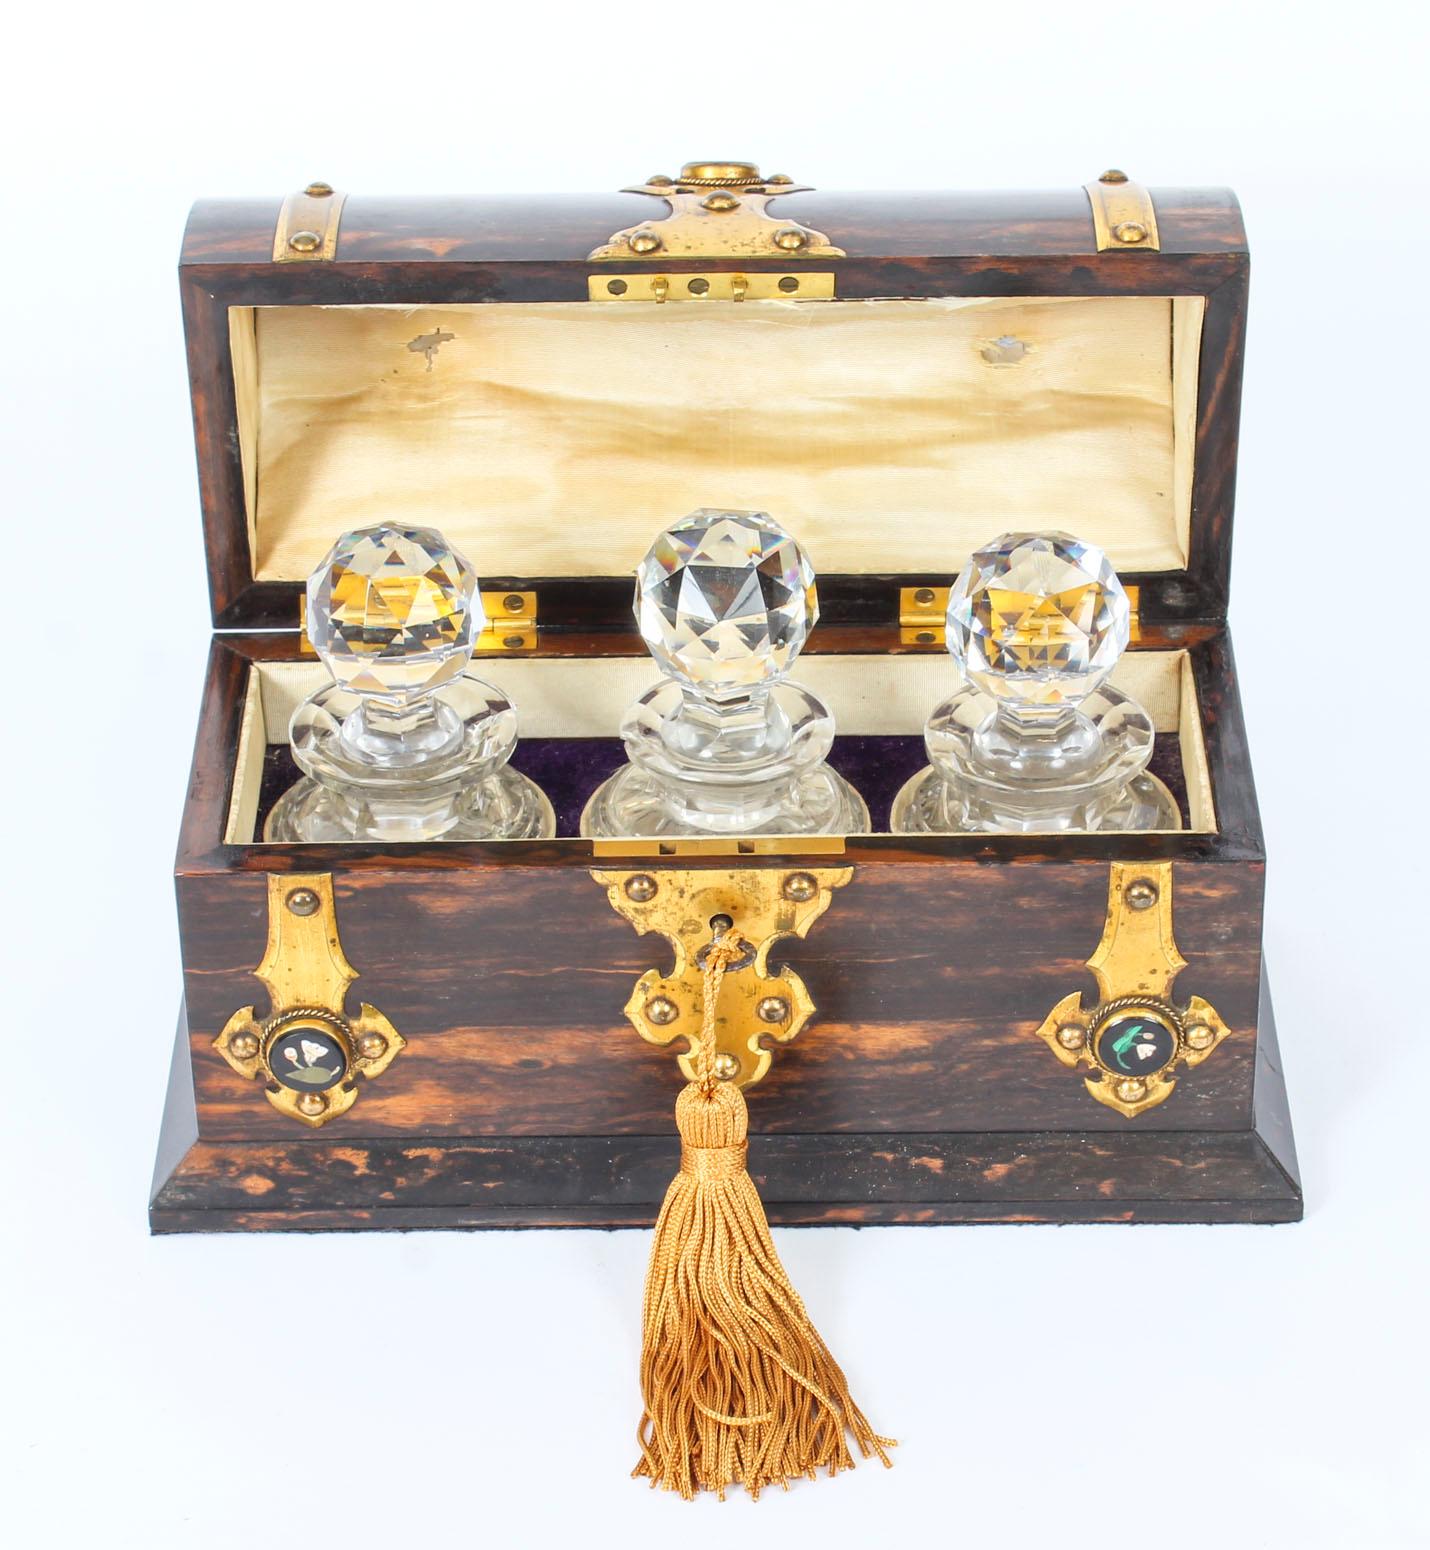 Es handelt sich um eine antike viktorianische Coromandel-Duftflaschendose in gewölbter Form mit aufwändigen dekorativen Messingbeschlägen mit eingelassenen attraktiven Pietra Dura-Cabochons, datiert um 1860.

Der gewölbte Deckel zeigt drei